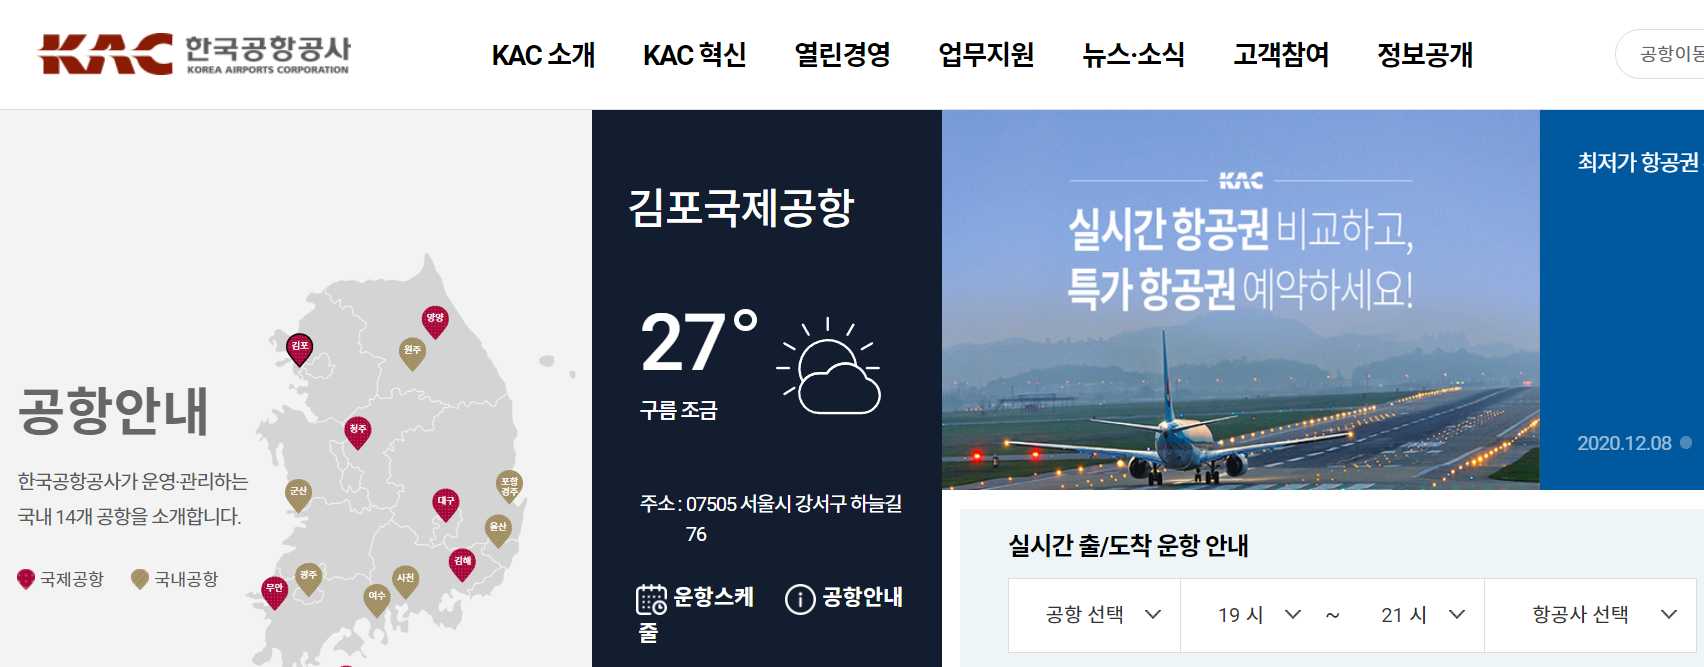 한국공항공사 홈페이지 메인화면